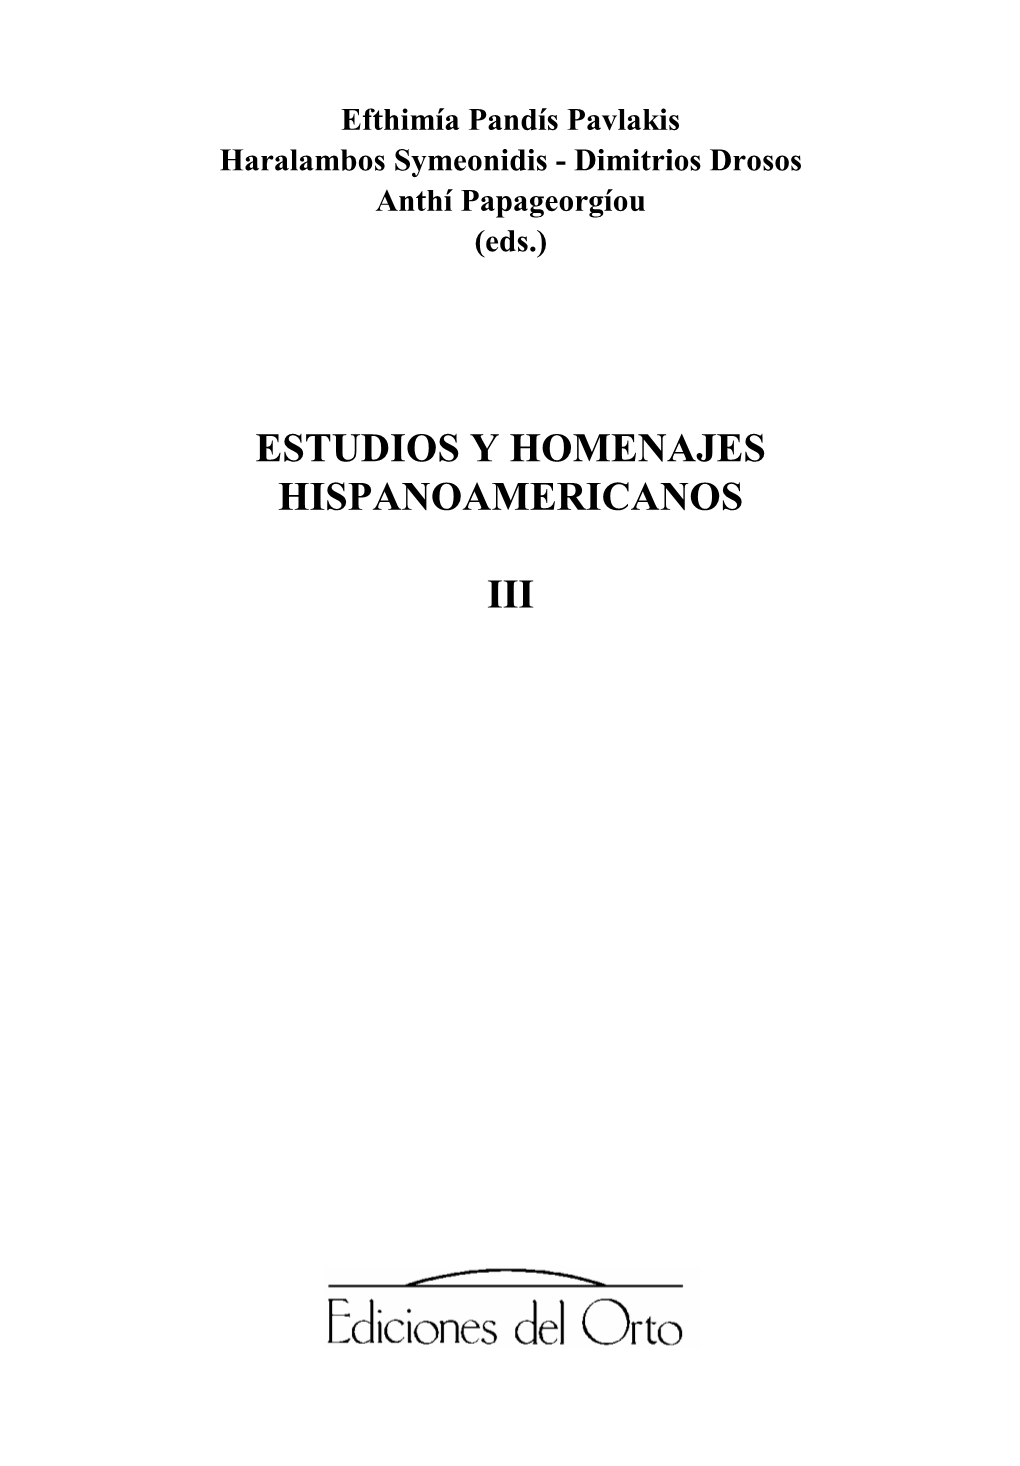 Estudios Y Homenajes Hispanoamericanos